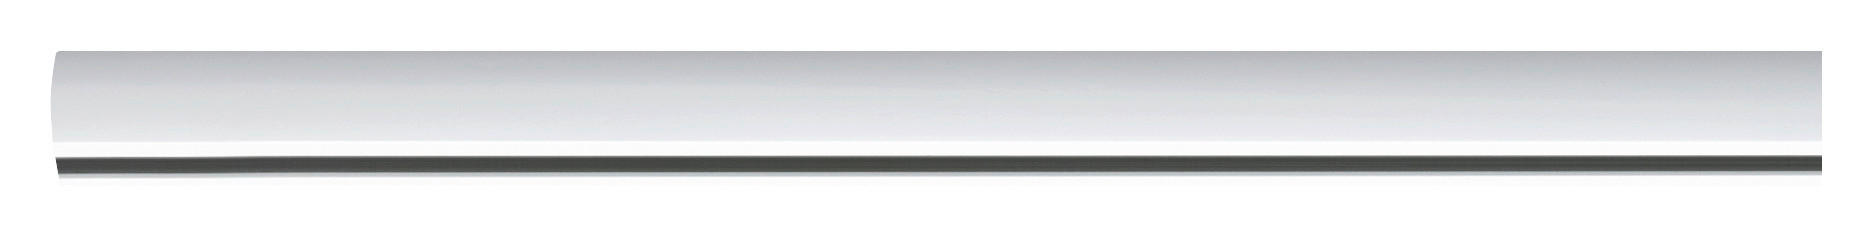 SCHIENENSYSTEM 100 CM URail 100 cm   - Weiß, Design, Metall (100cm) - Paulmann